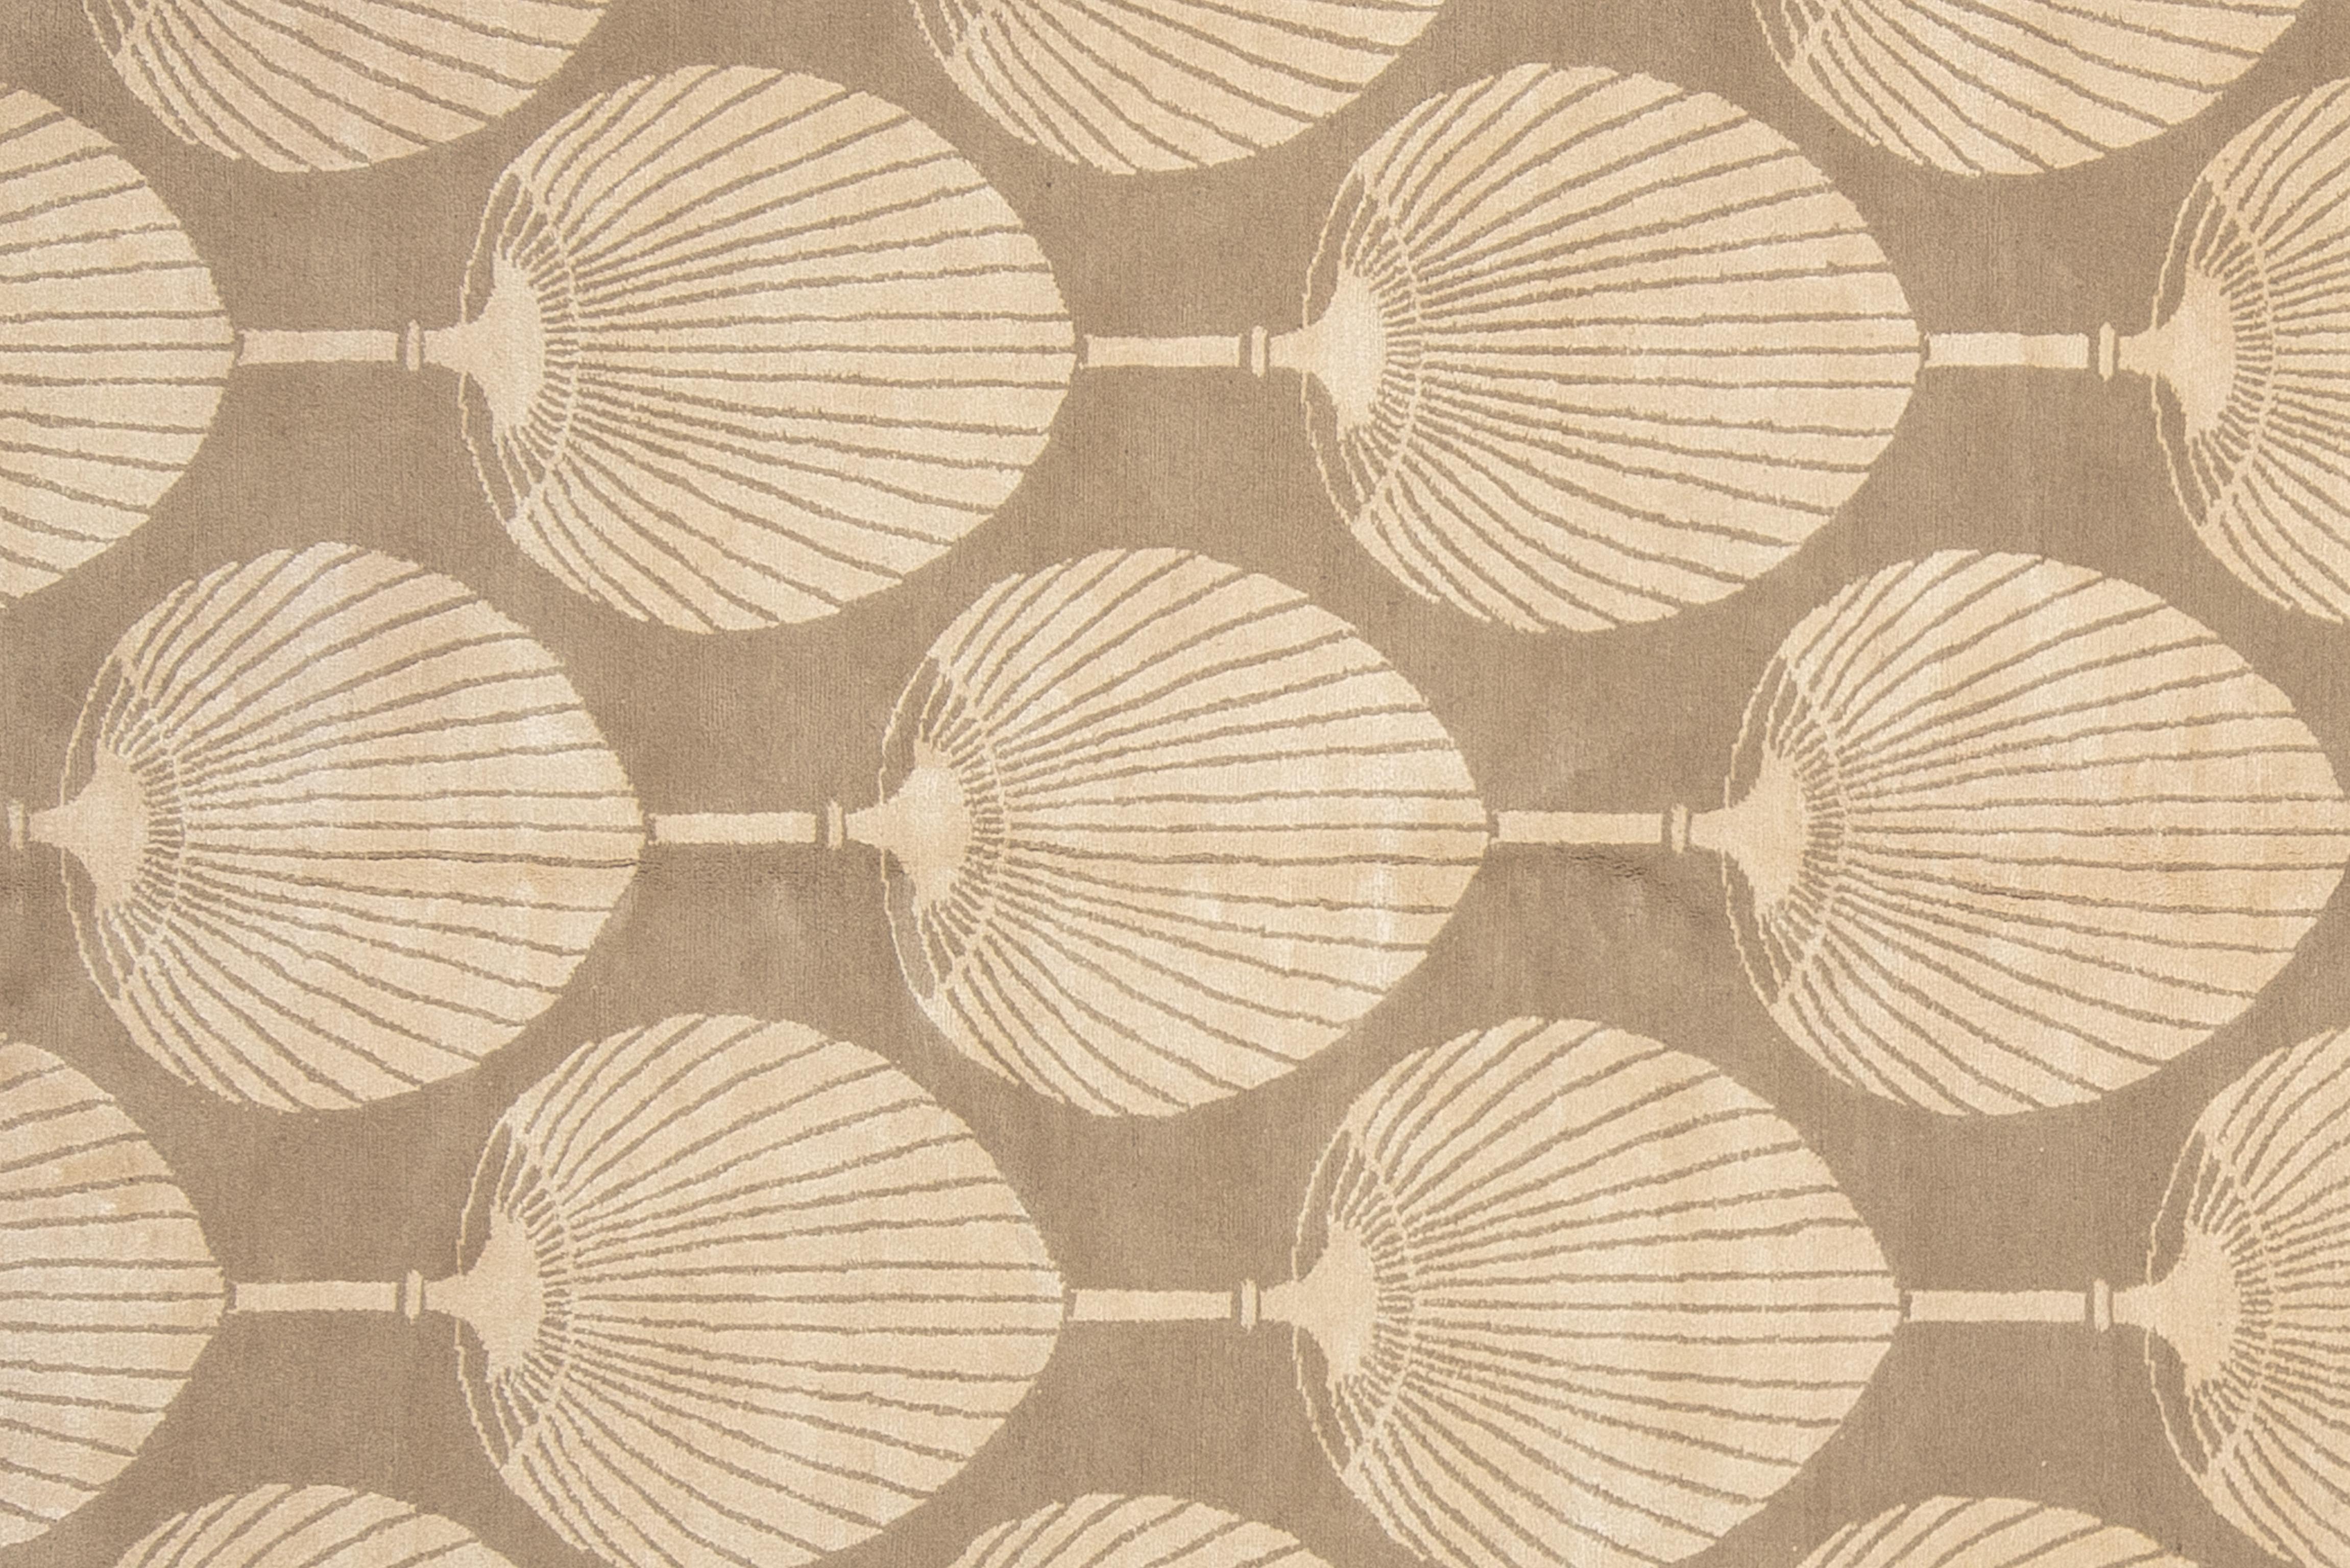 Moderner zeitgenössischer Teppich aus reiner neuseeländischer Wolle und Seide. Das Palmenmuster im Jugendstil und die neutrale Farbpalette machen diesen Teppich zur perfekten Ergänzung eines minimalistischen, modernen Dekors. 

Größe - 6' x